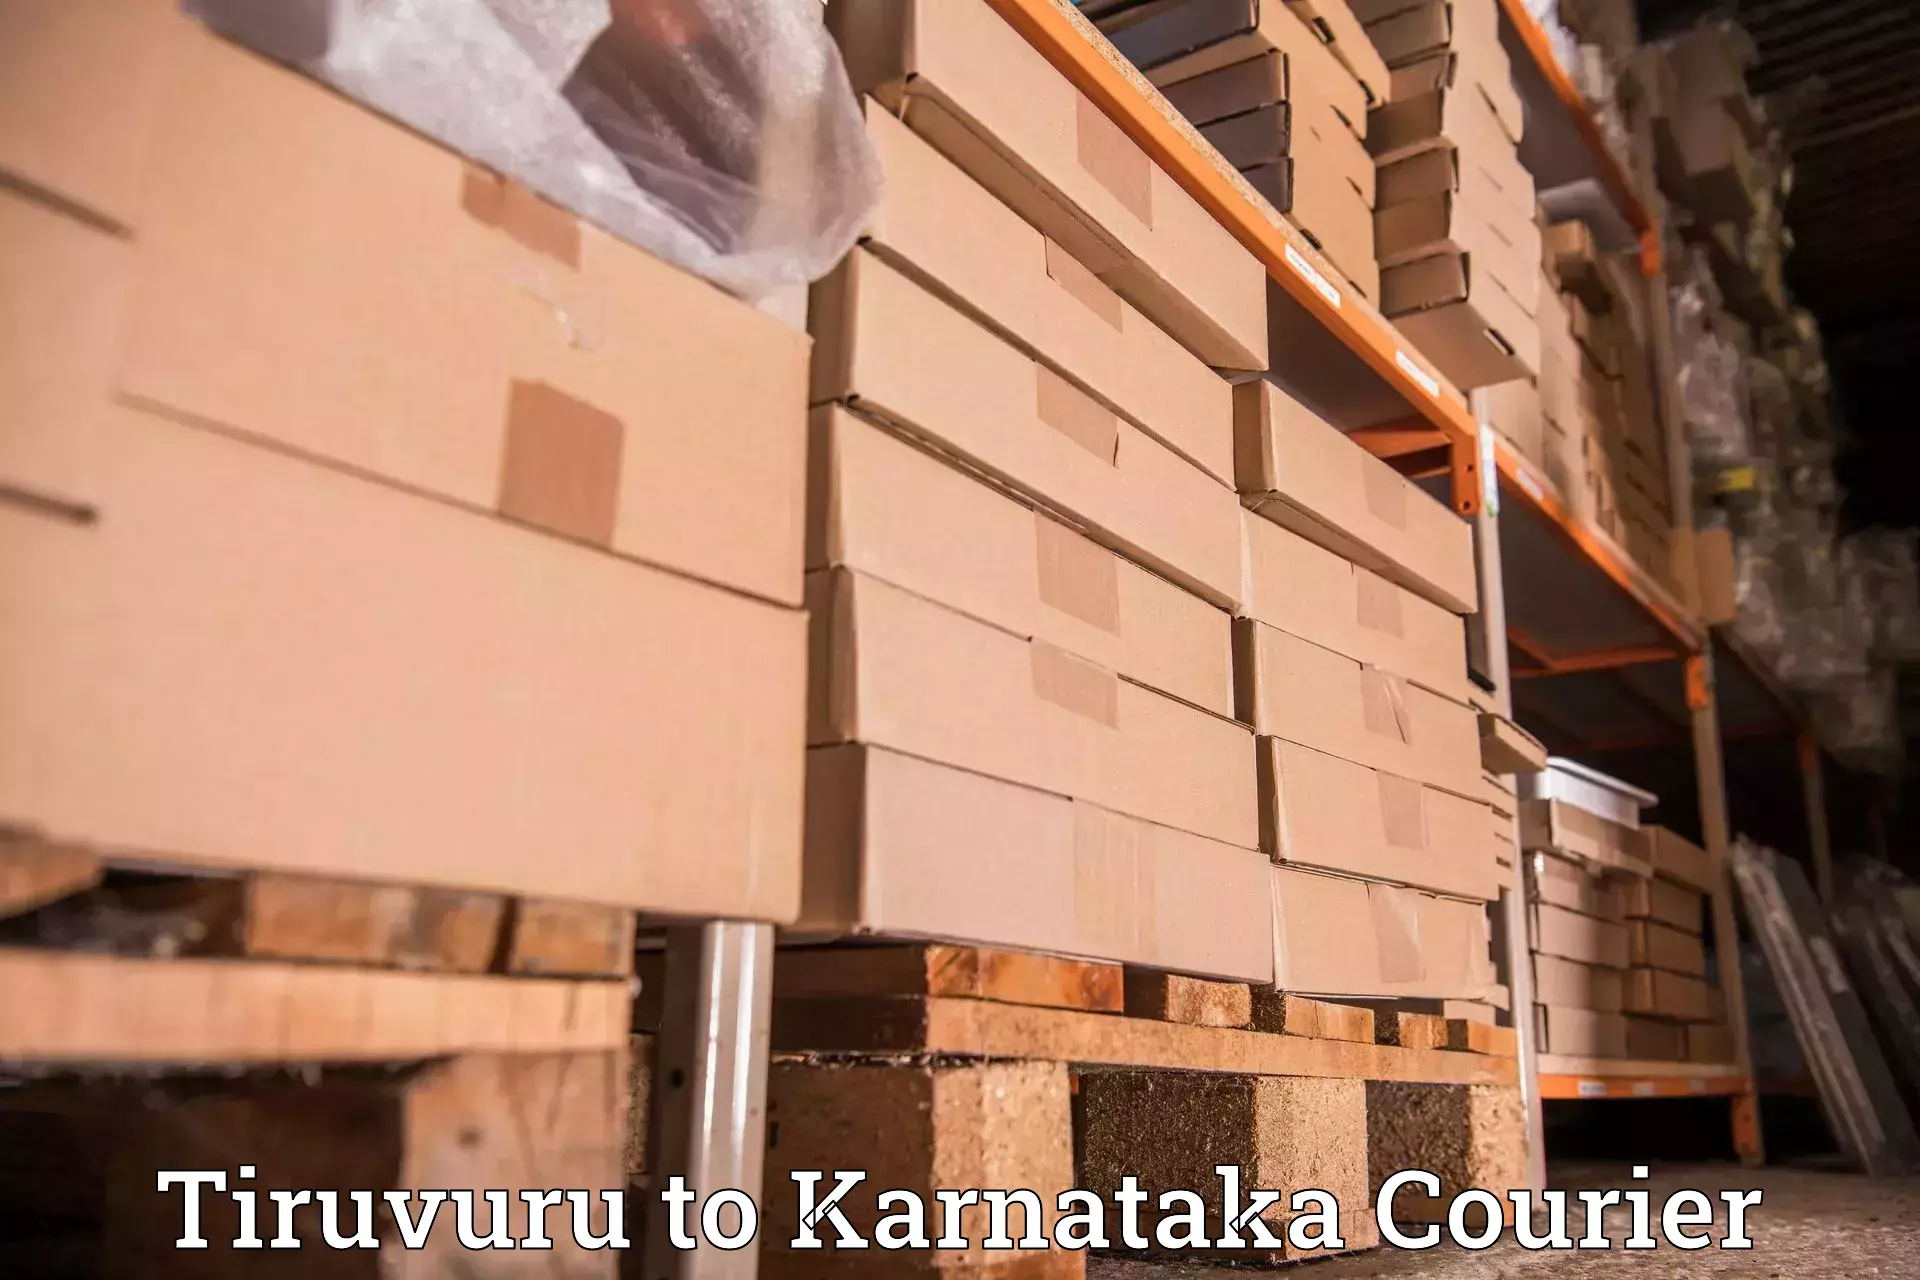 Courier service partnerships Tiruvuru to Aland Kalaburagi